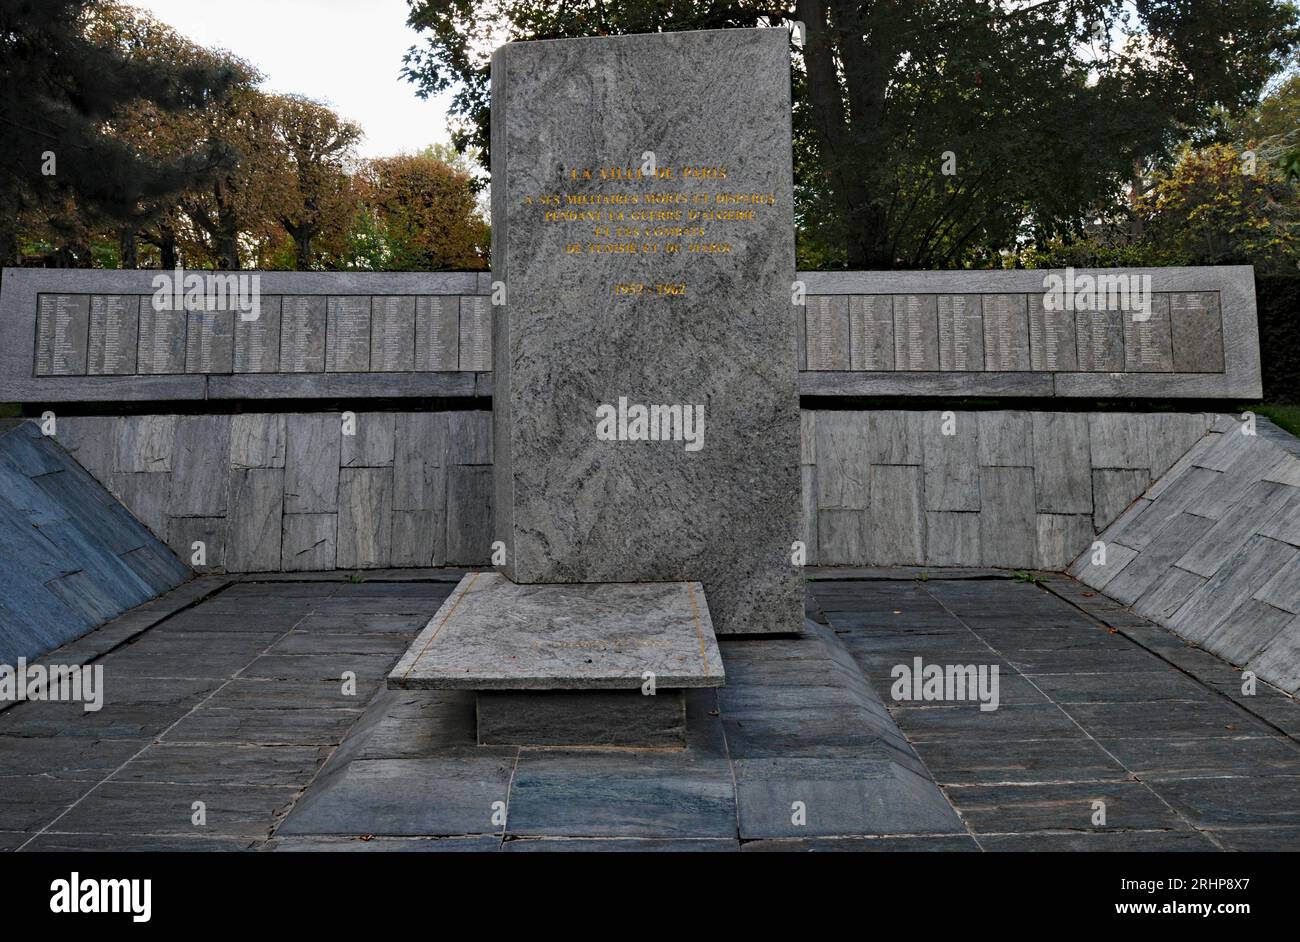 Un monumento della città di Parigi ai soldati uccisi o dispersi durante la guerra d'Algeria e i conflitti in Marocco e Tunisia si trova nel cimitero di Père Lachaise. Foto Stock